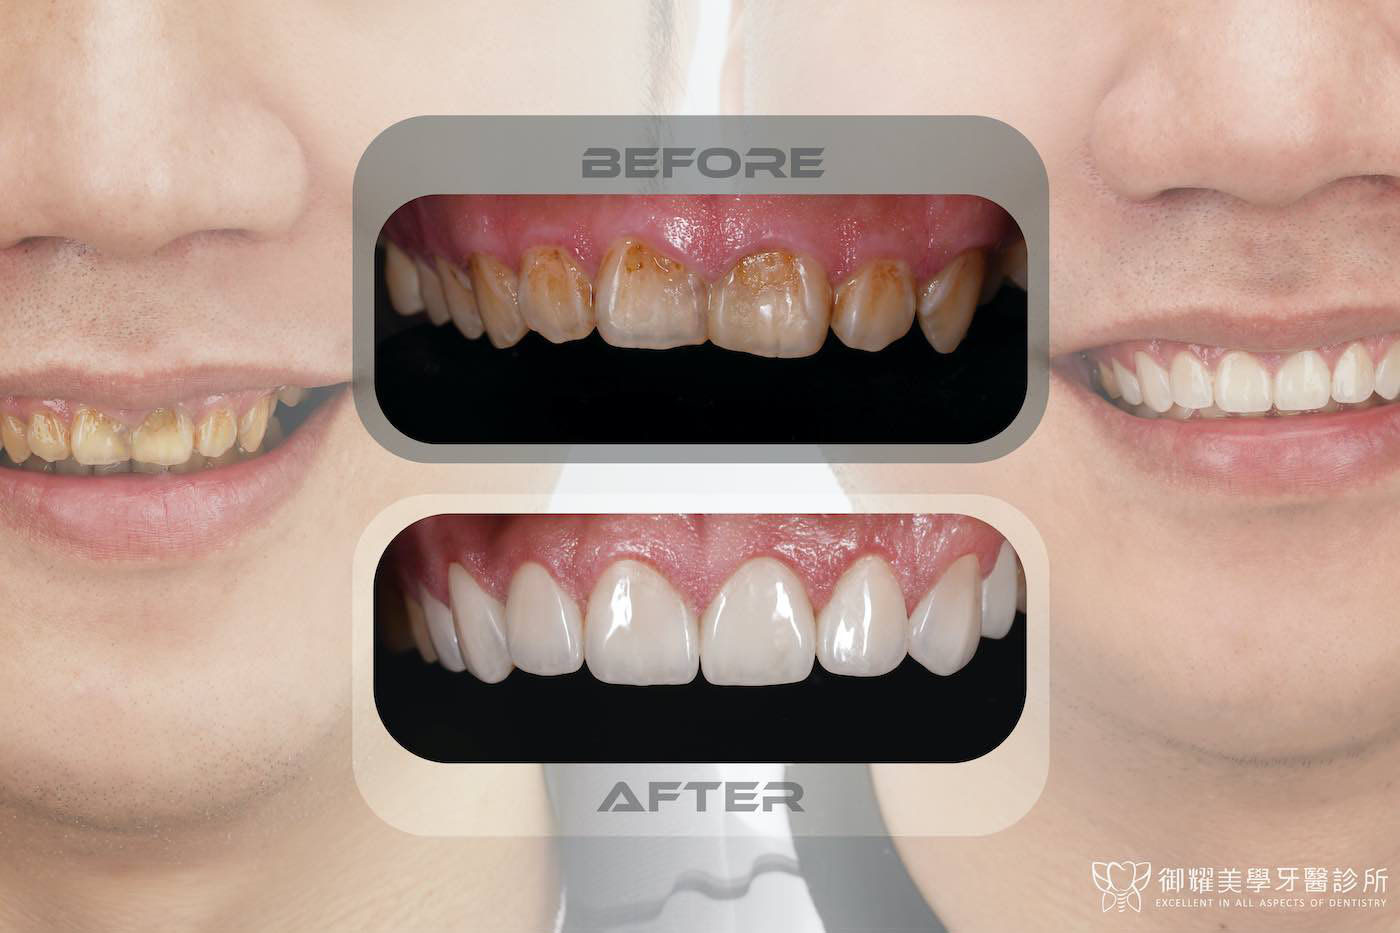 完成陶瓷貼片、水雷射牙冠增長術療程前後上排牙齒與笑容對比，一次改善牙齒黃、牙齒短小